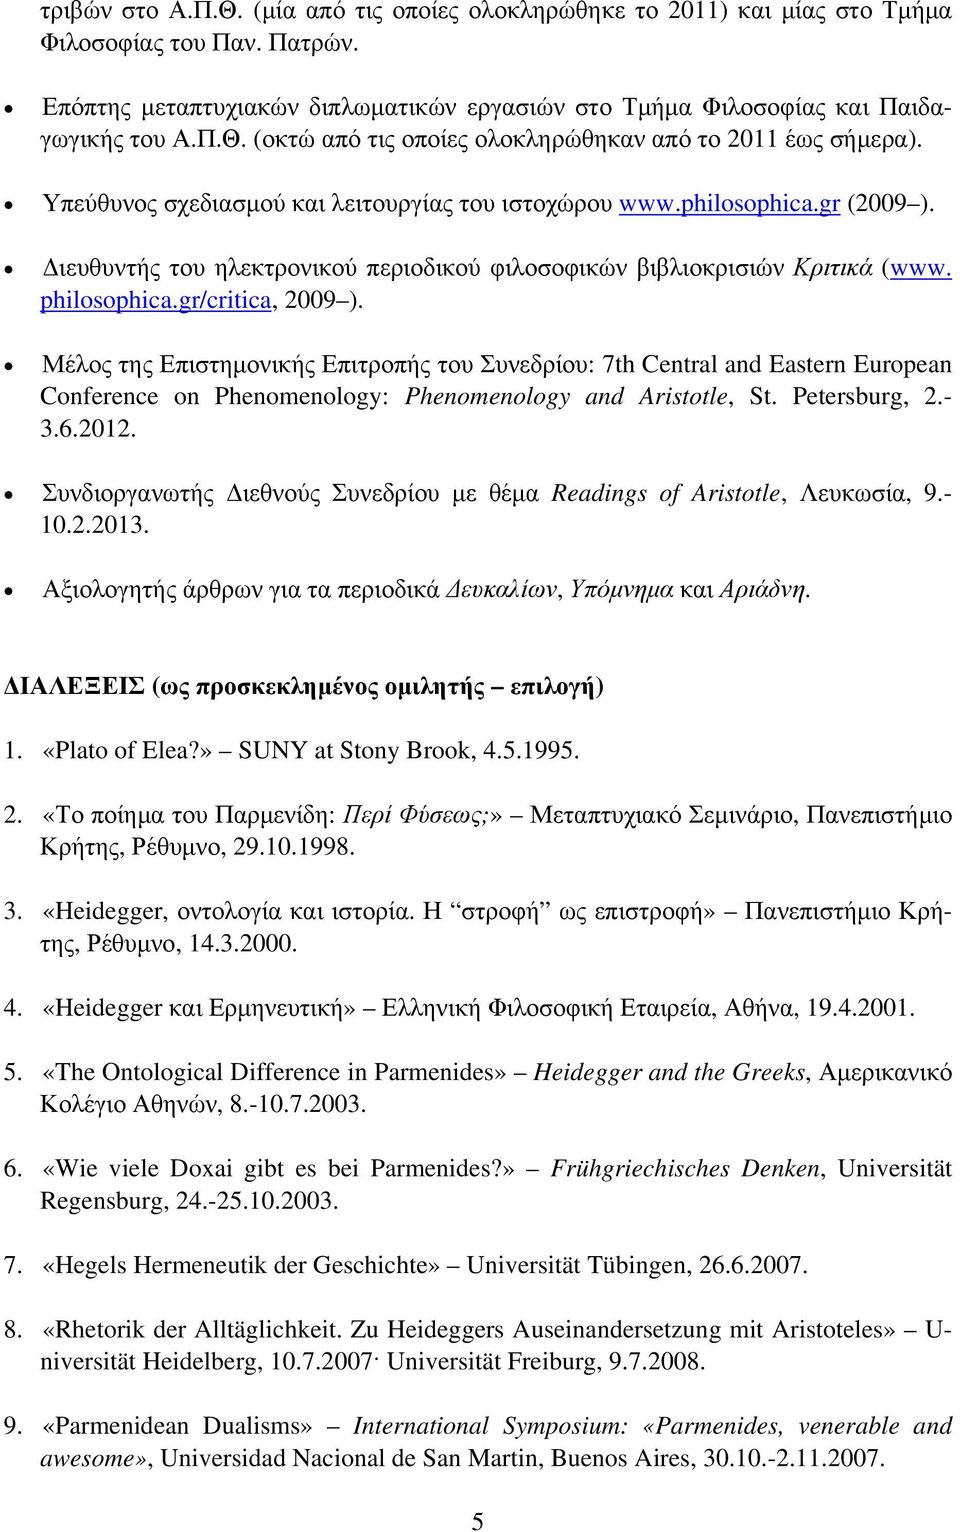 Μέλος της Επιστημονικής Επιτροπής του Συνεδρίου: 7th Central and Eastern European Conference on Phenomenology: Phenomenology and Aristotle, St. Petersburg, 2.- 3.6.2012.